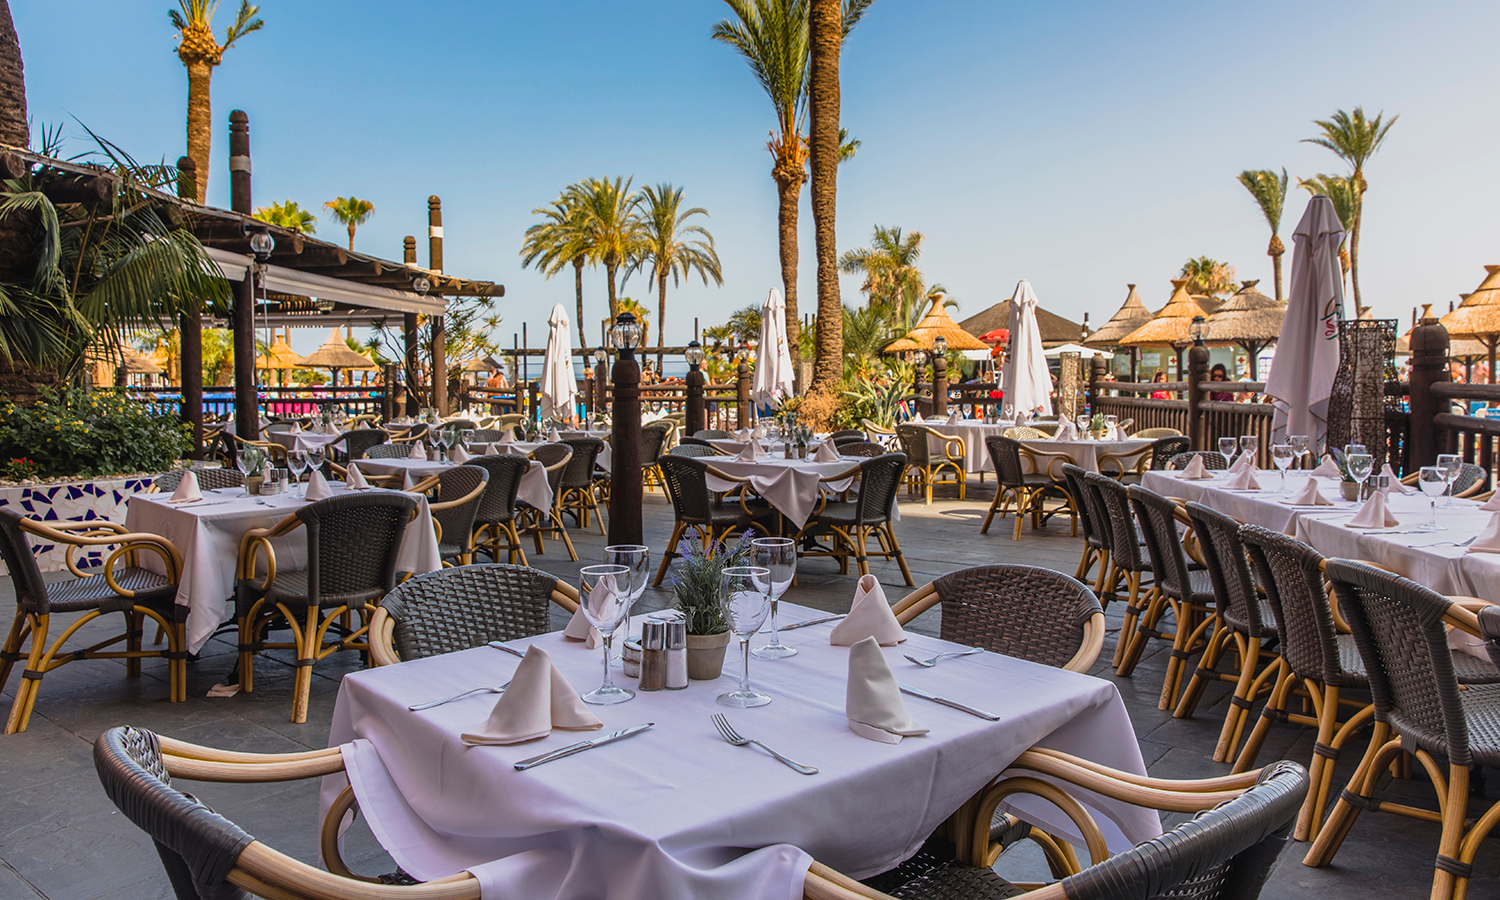 La terraza del Restaurante Oasis está abierta en verano para el servicio de cena a la carta